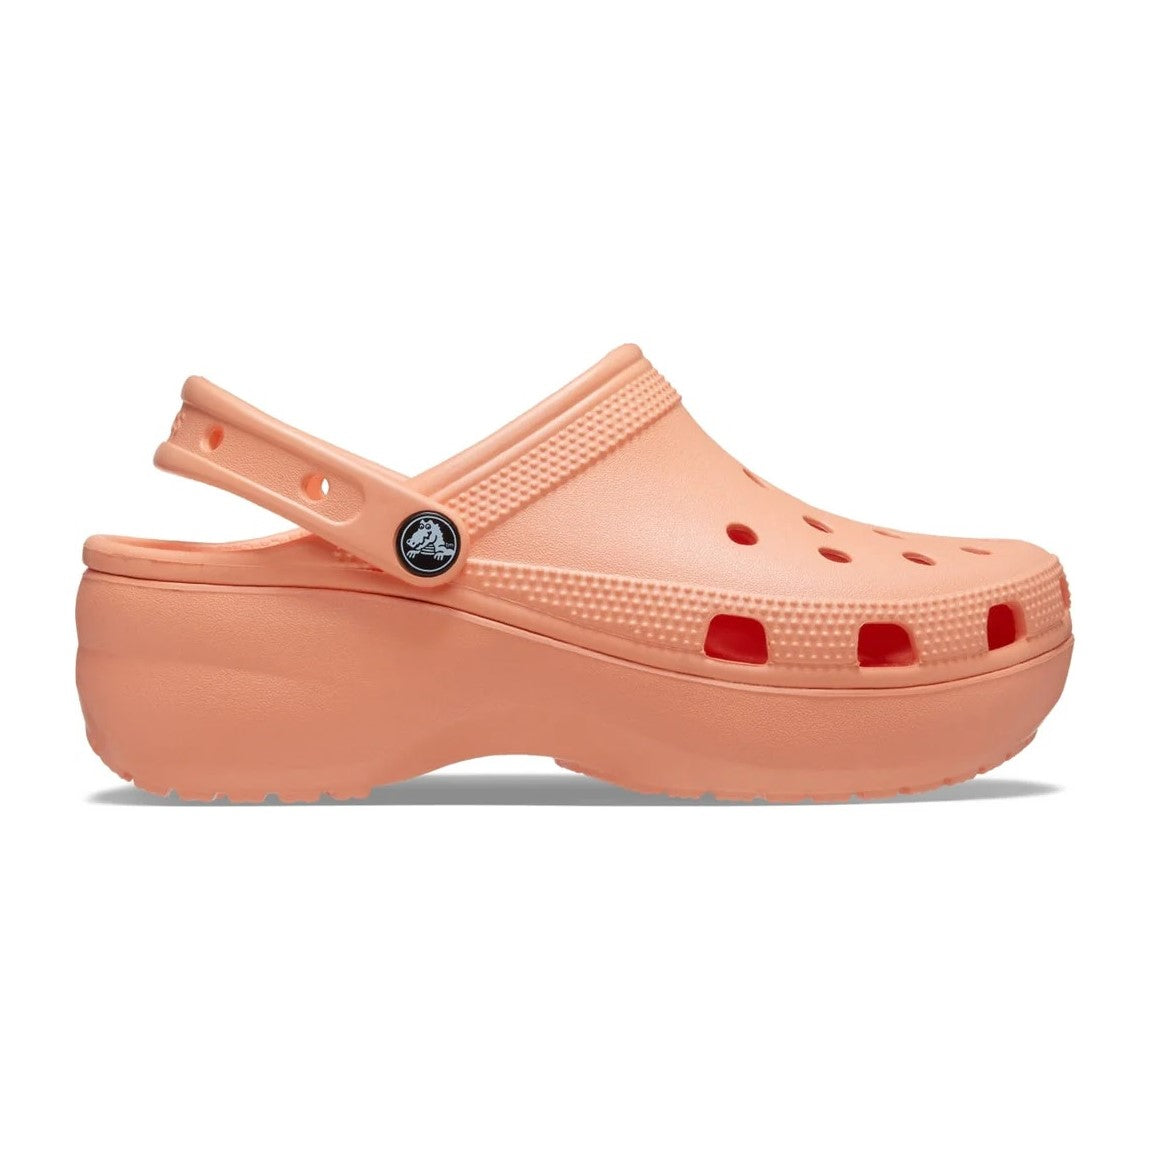 Crocs Womens Platform Clog Sandals